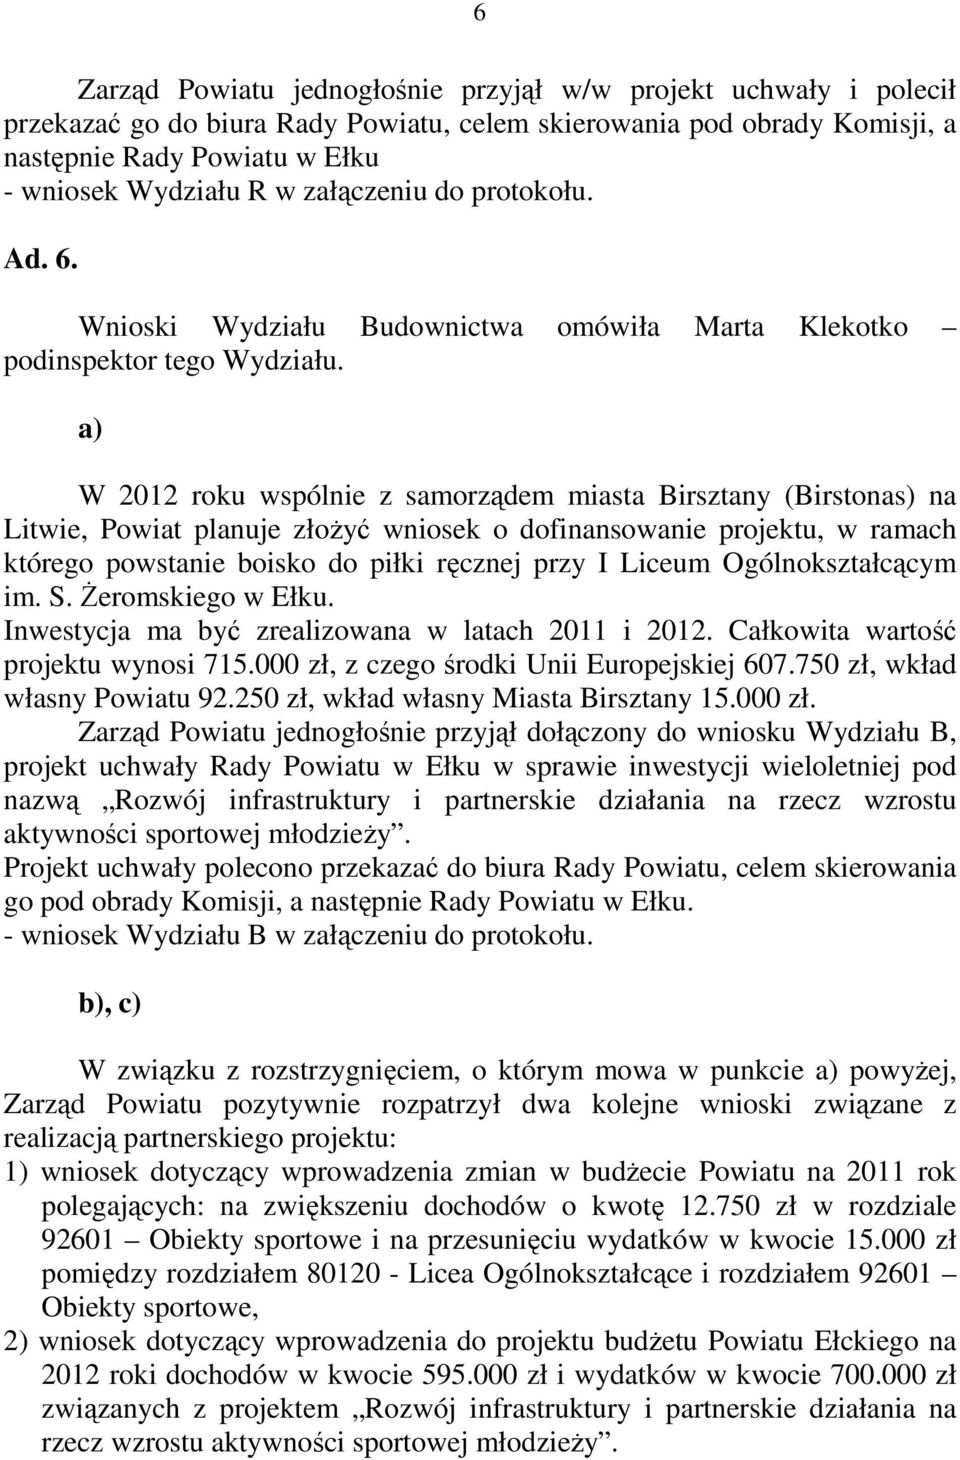 a) W 2012 roku wspólnie z samorządem miasta Birsztany (Birstonas) na Litwie, Powiat planuje złożyć wniosek o dofinansowanie projektu, w ramach którego powstanie boisko do piłki ręcznej przy I Liceum